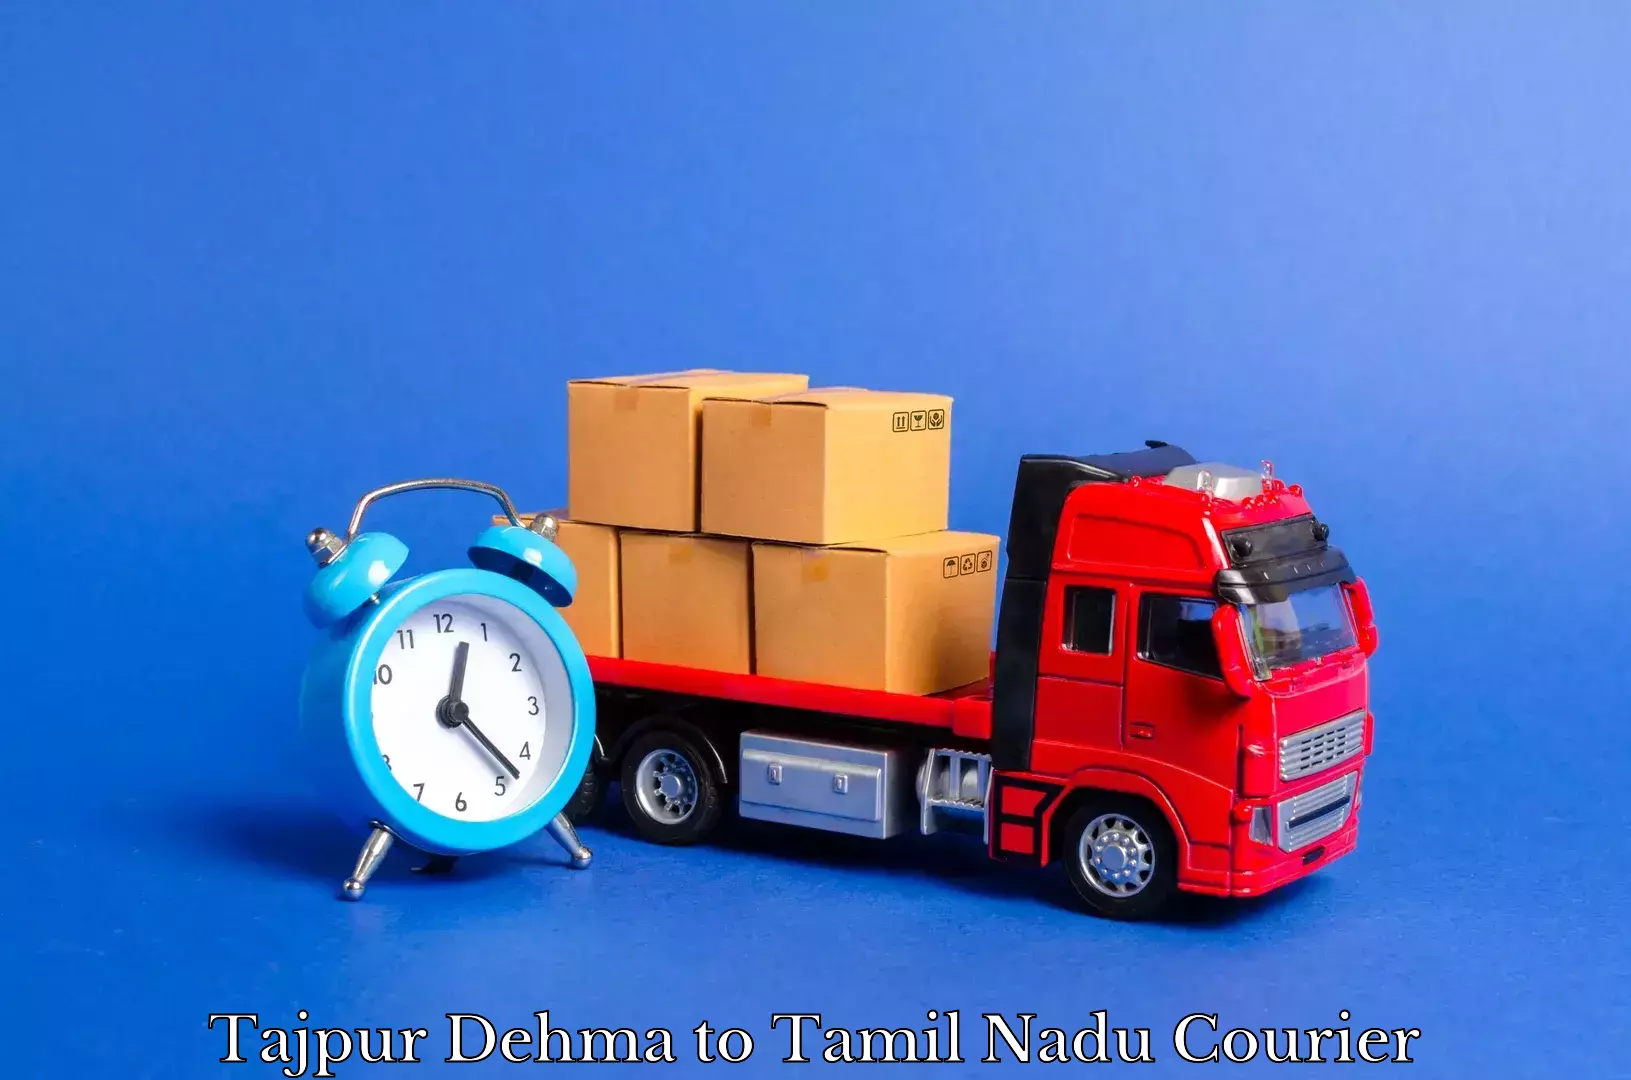 Expert furniture transport Tajpur Dehma to Tamil Nadu